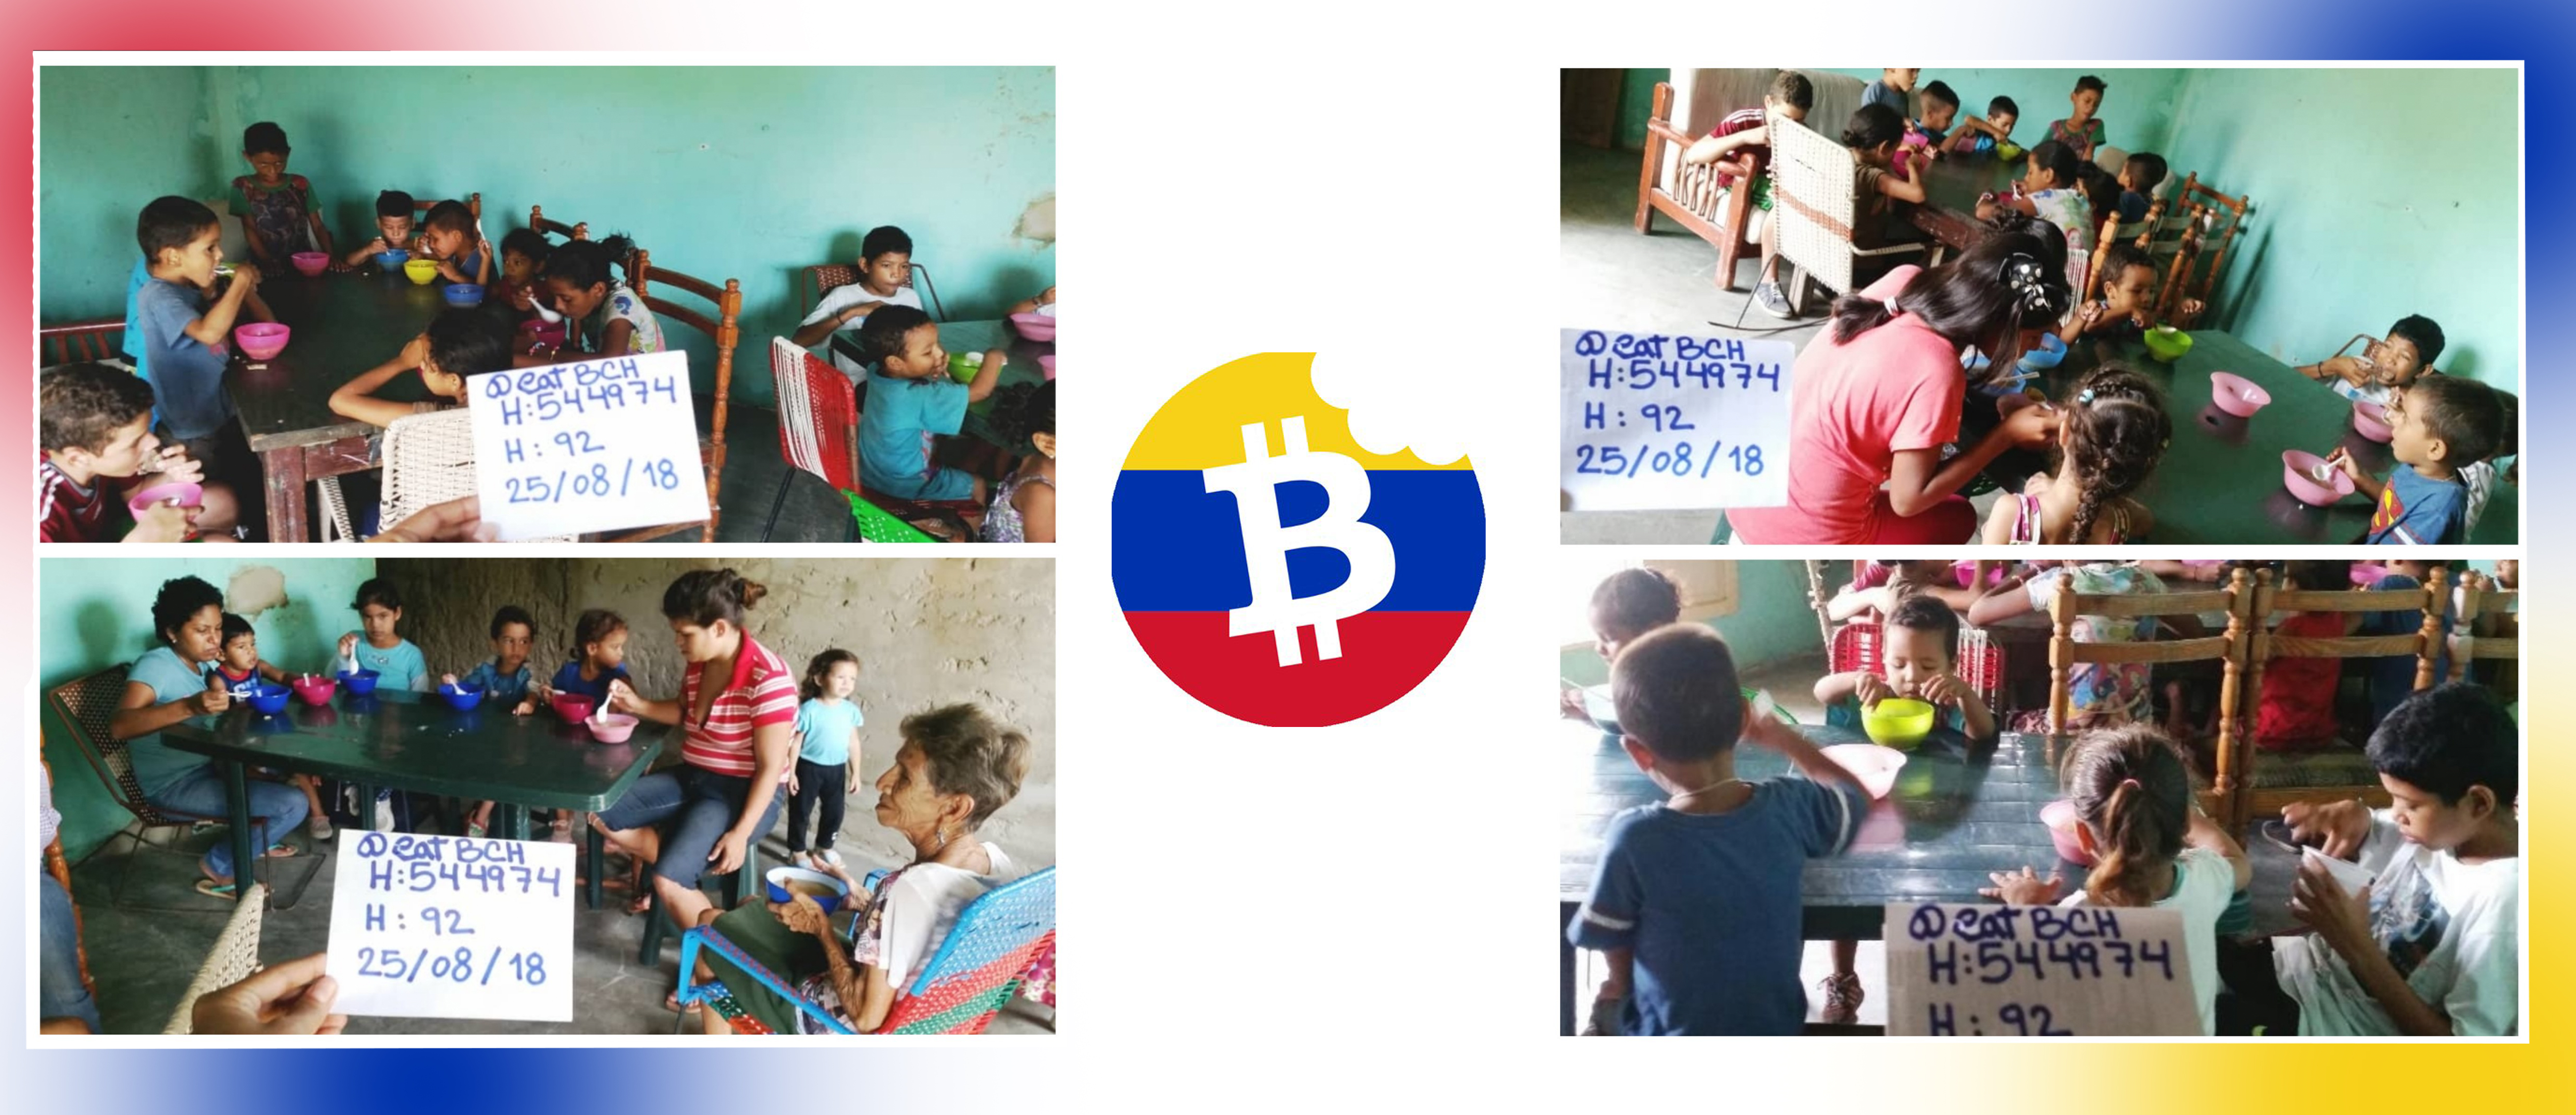 Eatbch, organización sin fines de lucro venezolana, celebra su primer aniversario en medio de una hiperinflación